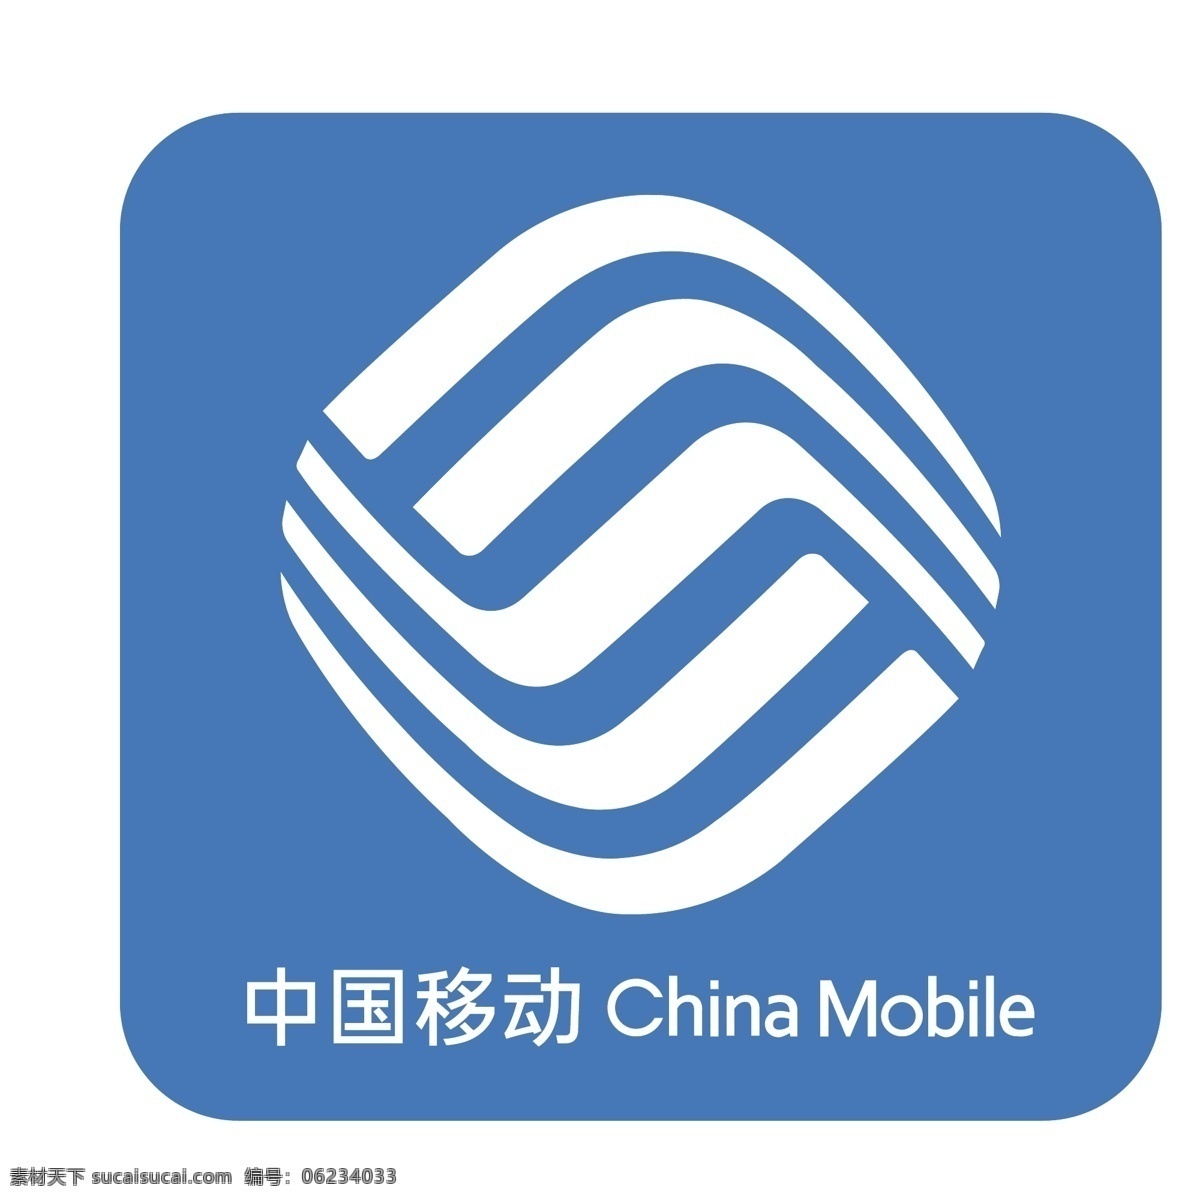 简约 蓝色 中国移动 矩形 logo 图标 logo图标 创意 扁平图标 手绘 软件 千库原创 免抠图png